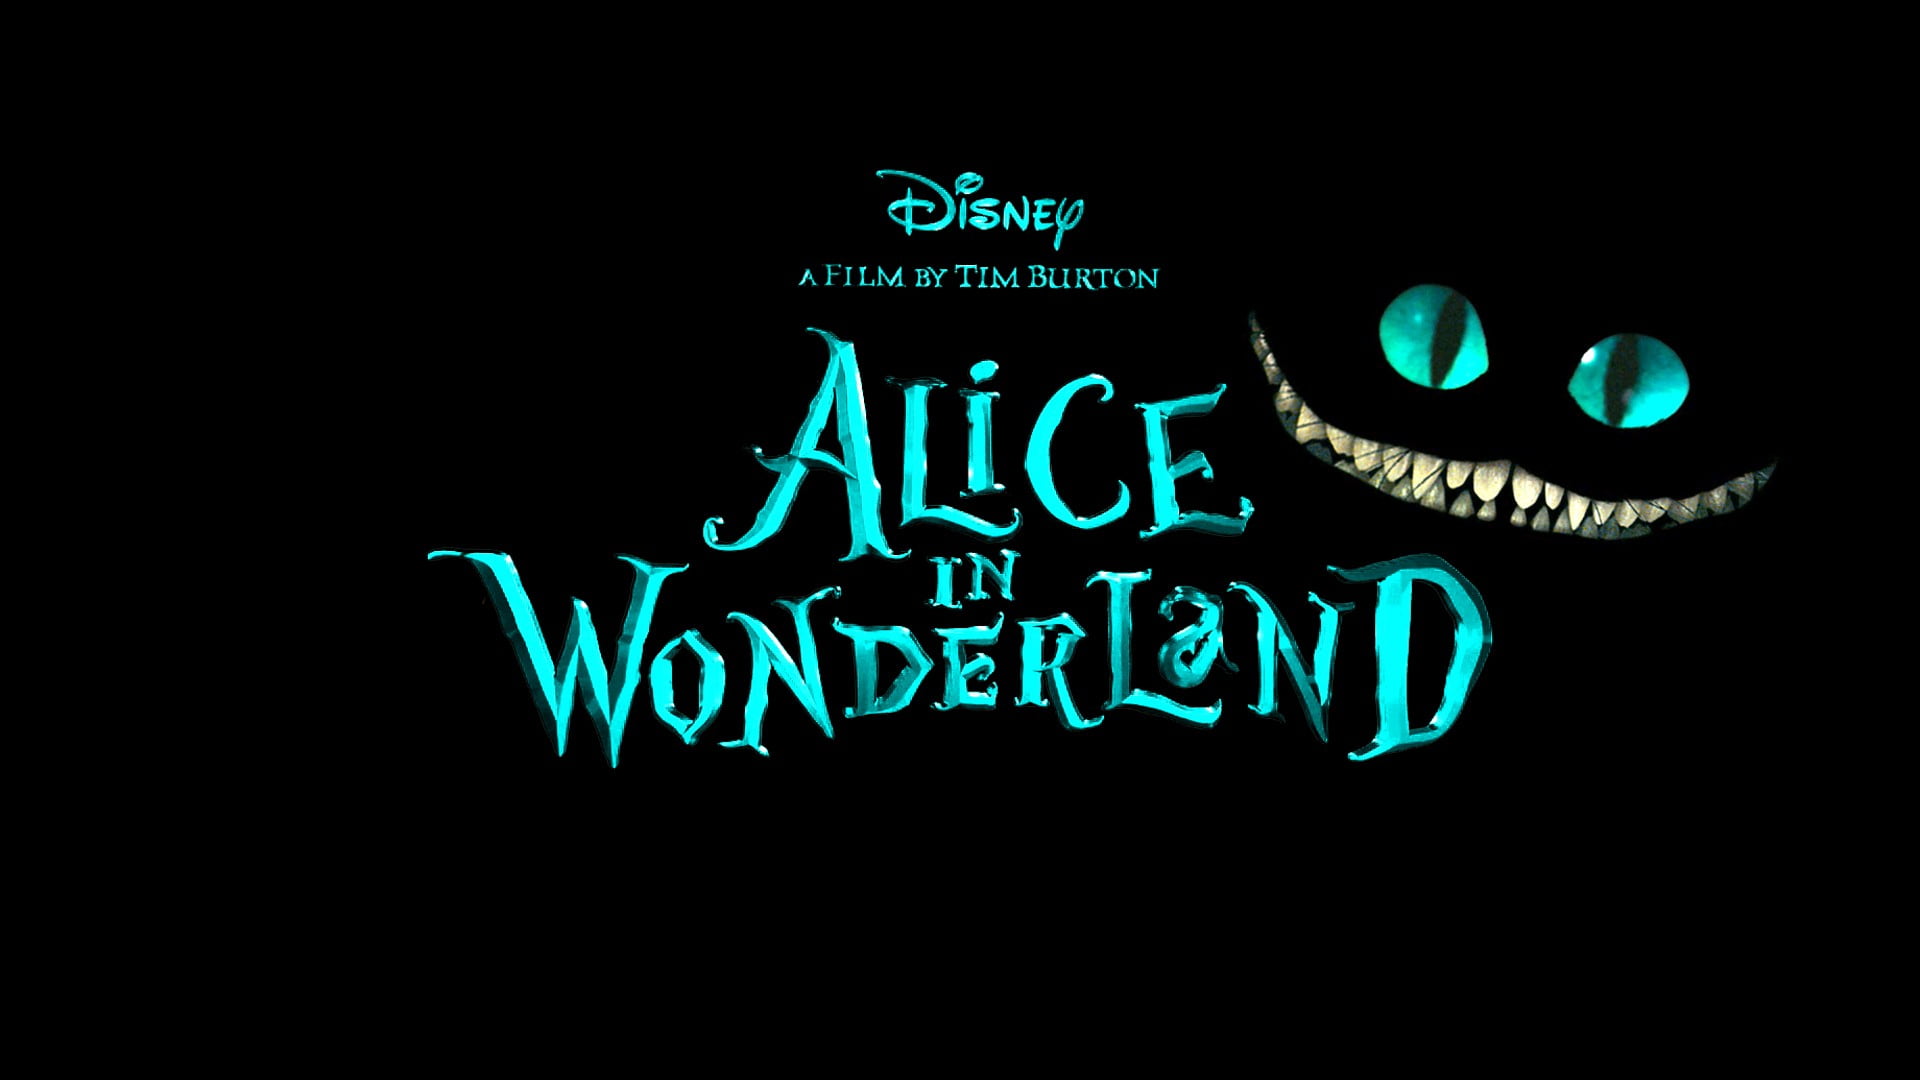 Disney Alice in Wonderland wallpaper, movies, Alice in Wonderland, Cheshire Cat, black background